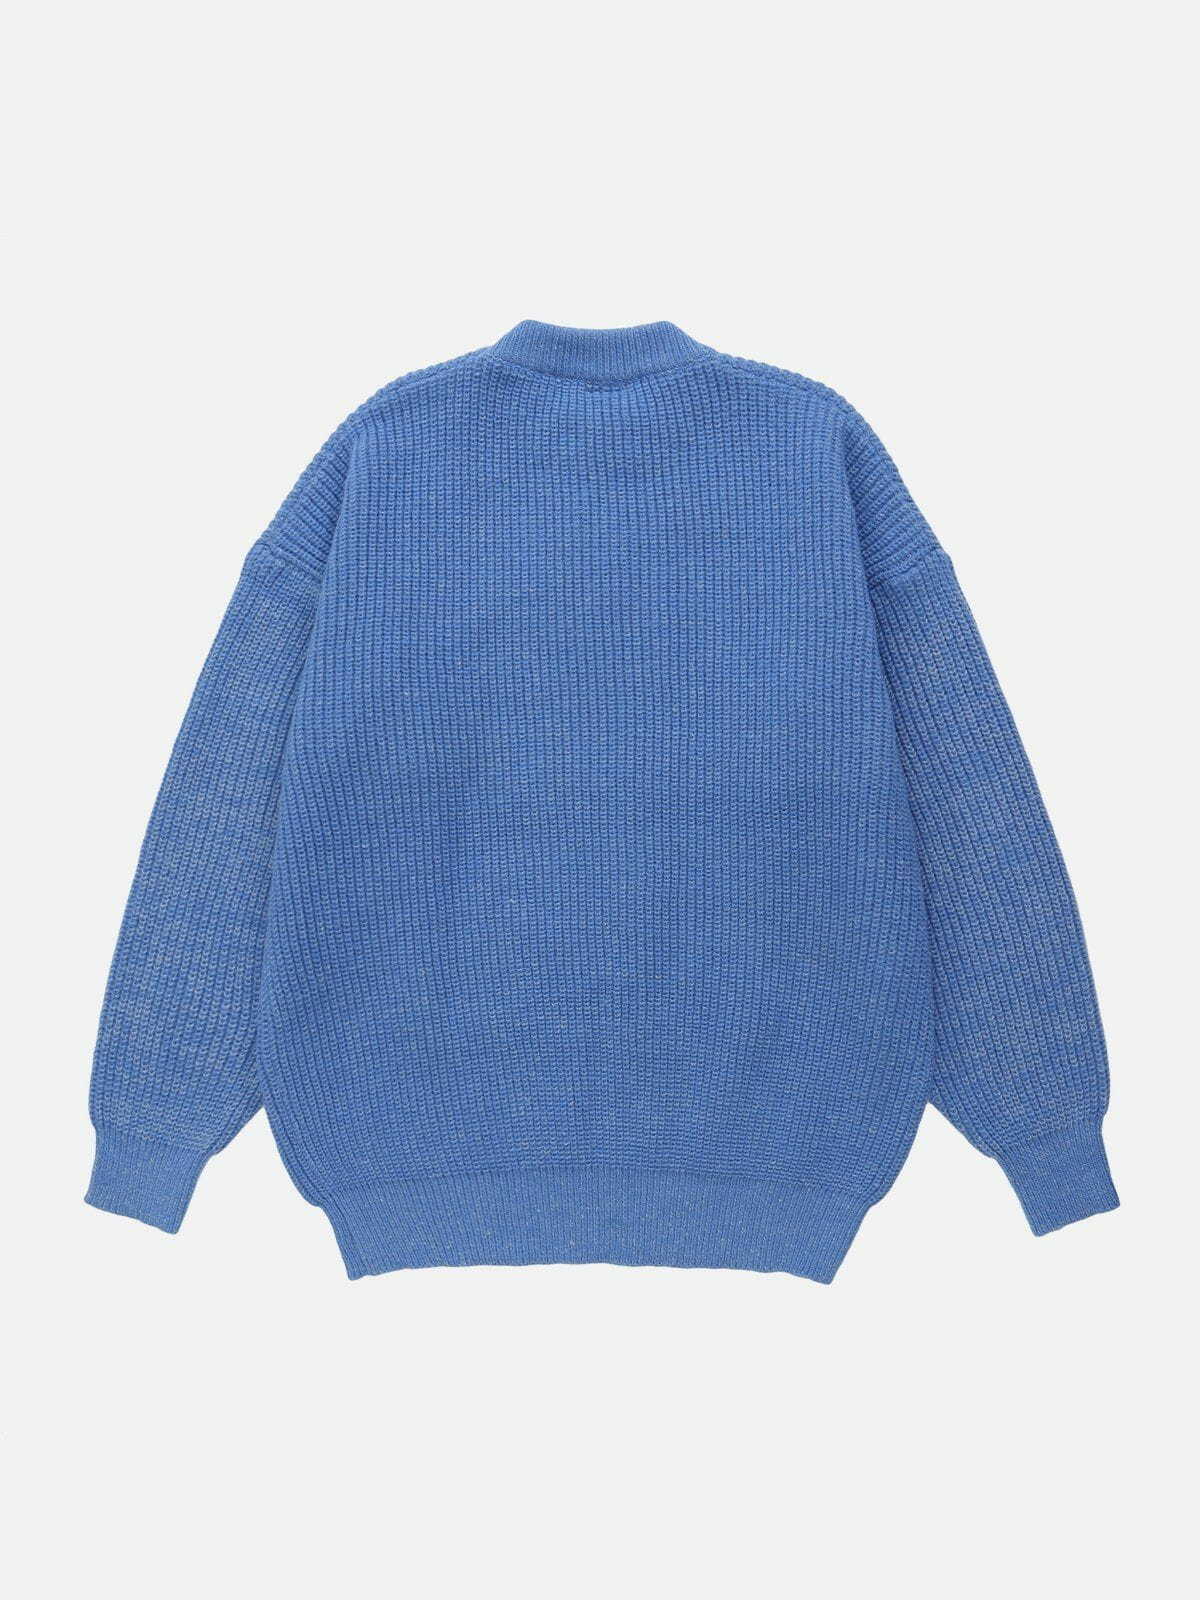 retro tie dye sweater vibrant & trendy streetwear 1034